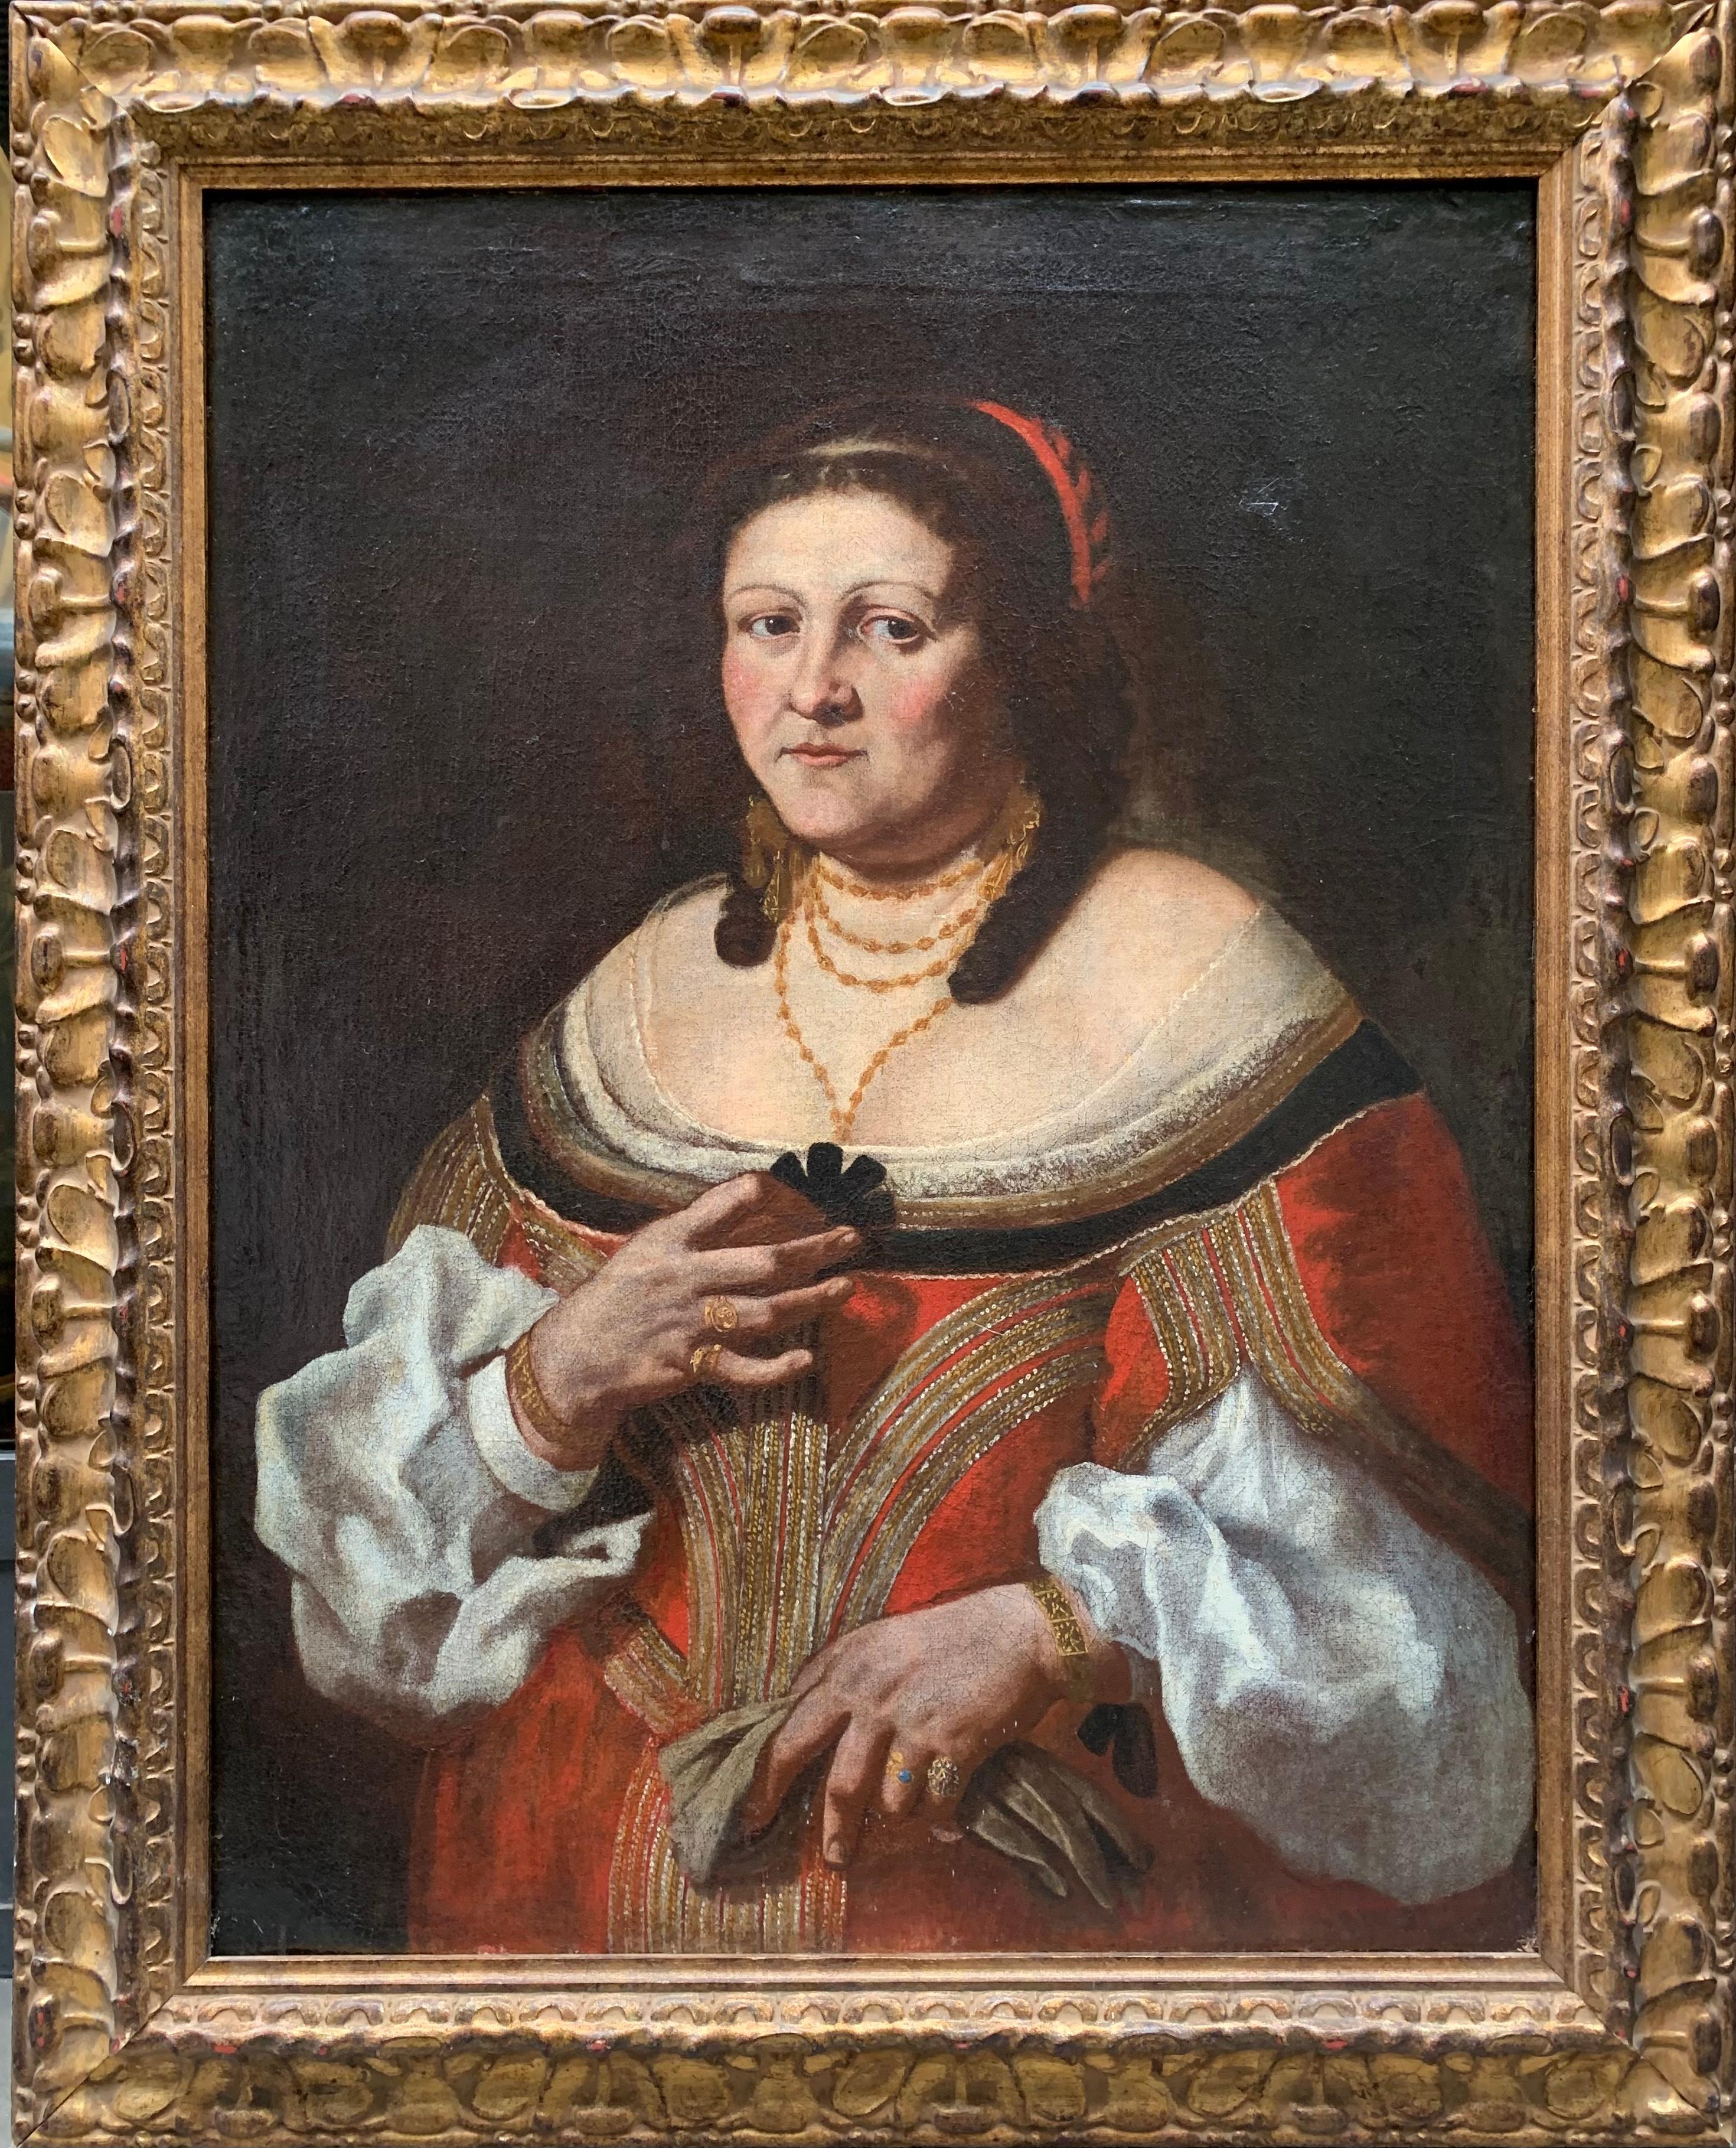 Porträt einer Adeligen. 
Carlo Ceresa zugeschrieben. (1609 - 1679, Bergamo)
Öl auf Leinwand.

Größe cm 110x86,5cm mit Rahmen

Um 1640.

Dieses Porträt stellt eine Frau mittleren Alters mit großem Realismus dar, wie er insbesondere für die Maler der